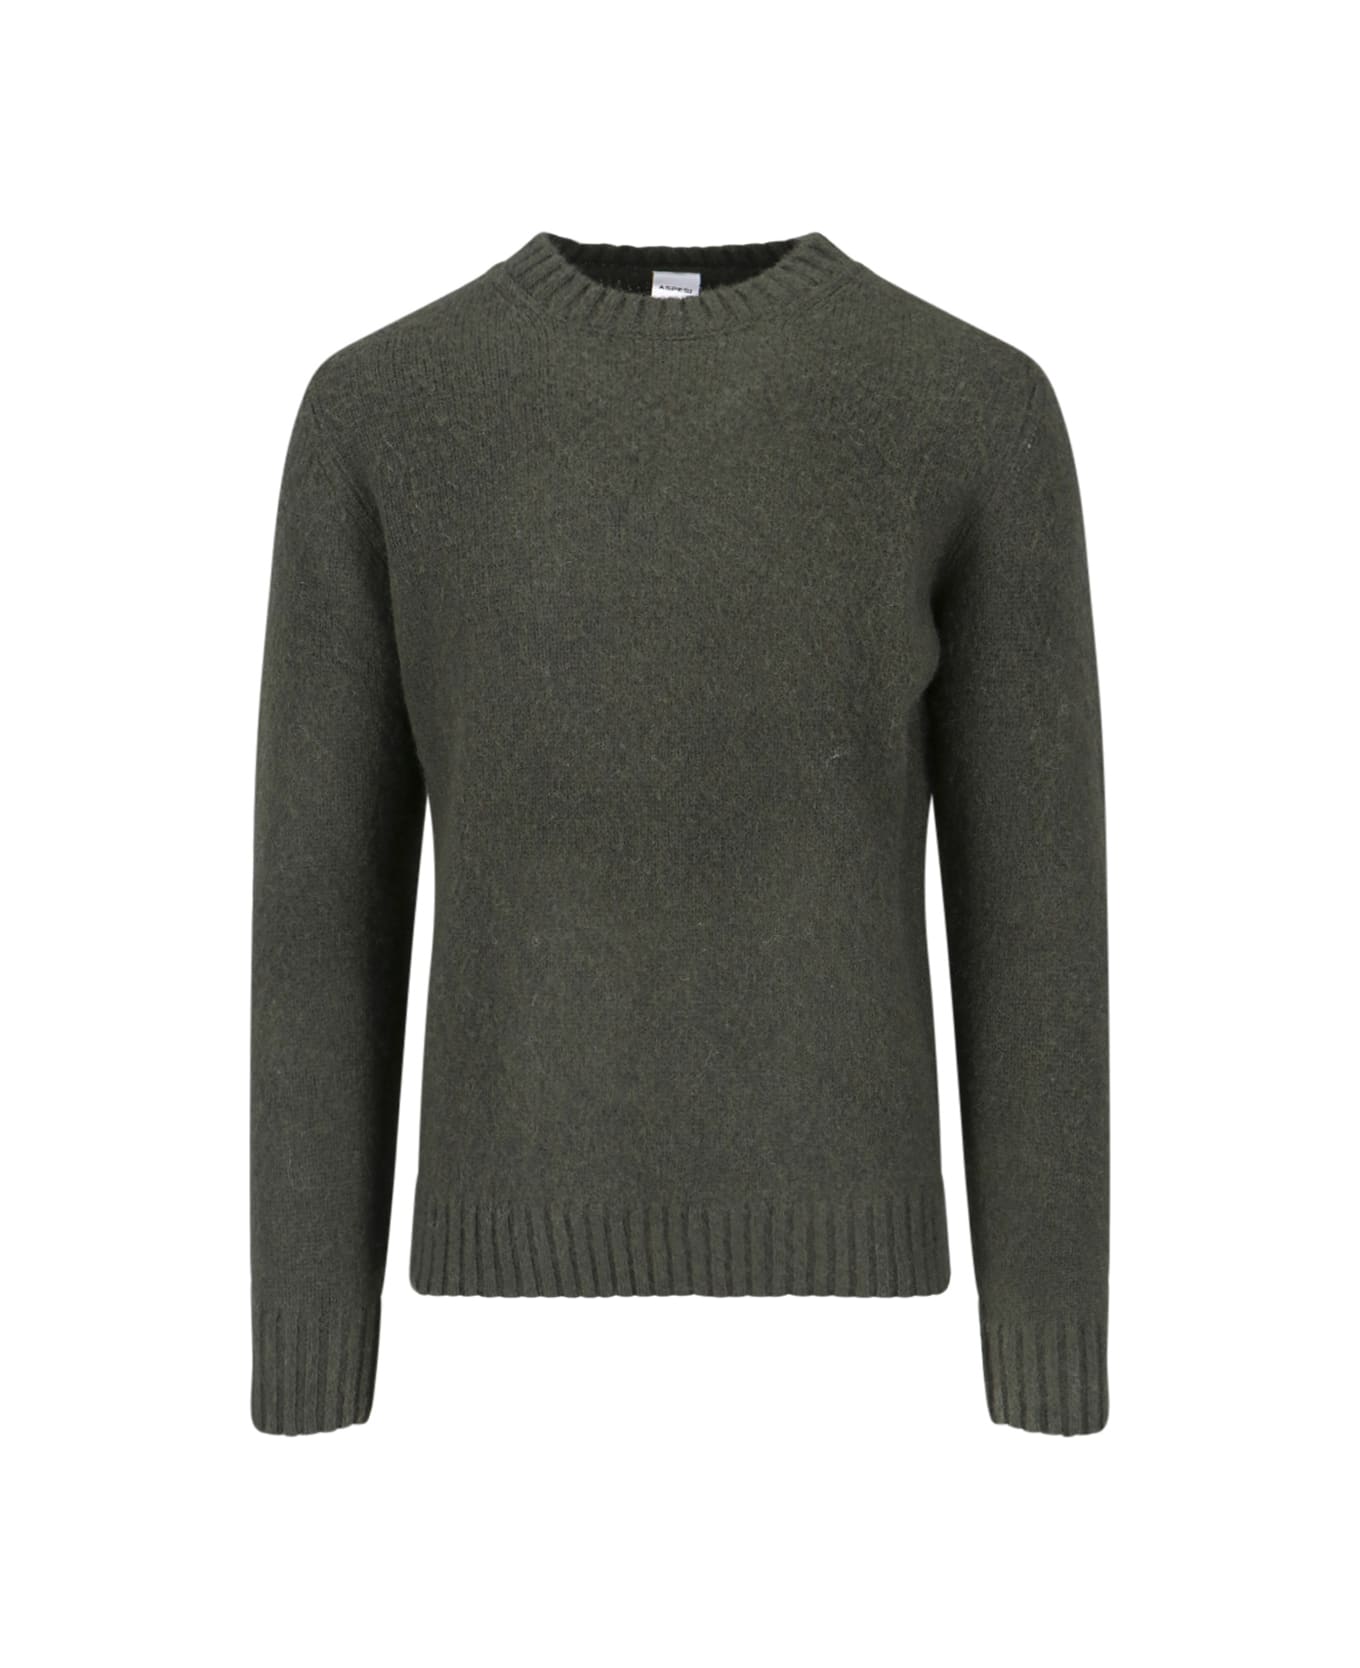 Aspesi 'm183' Sweater - MILITARY GREEN ニットウェア